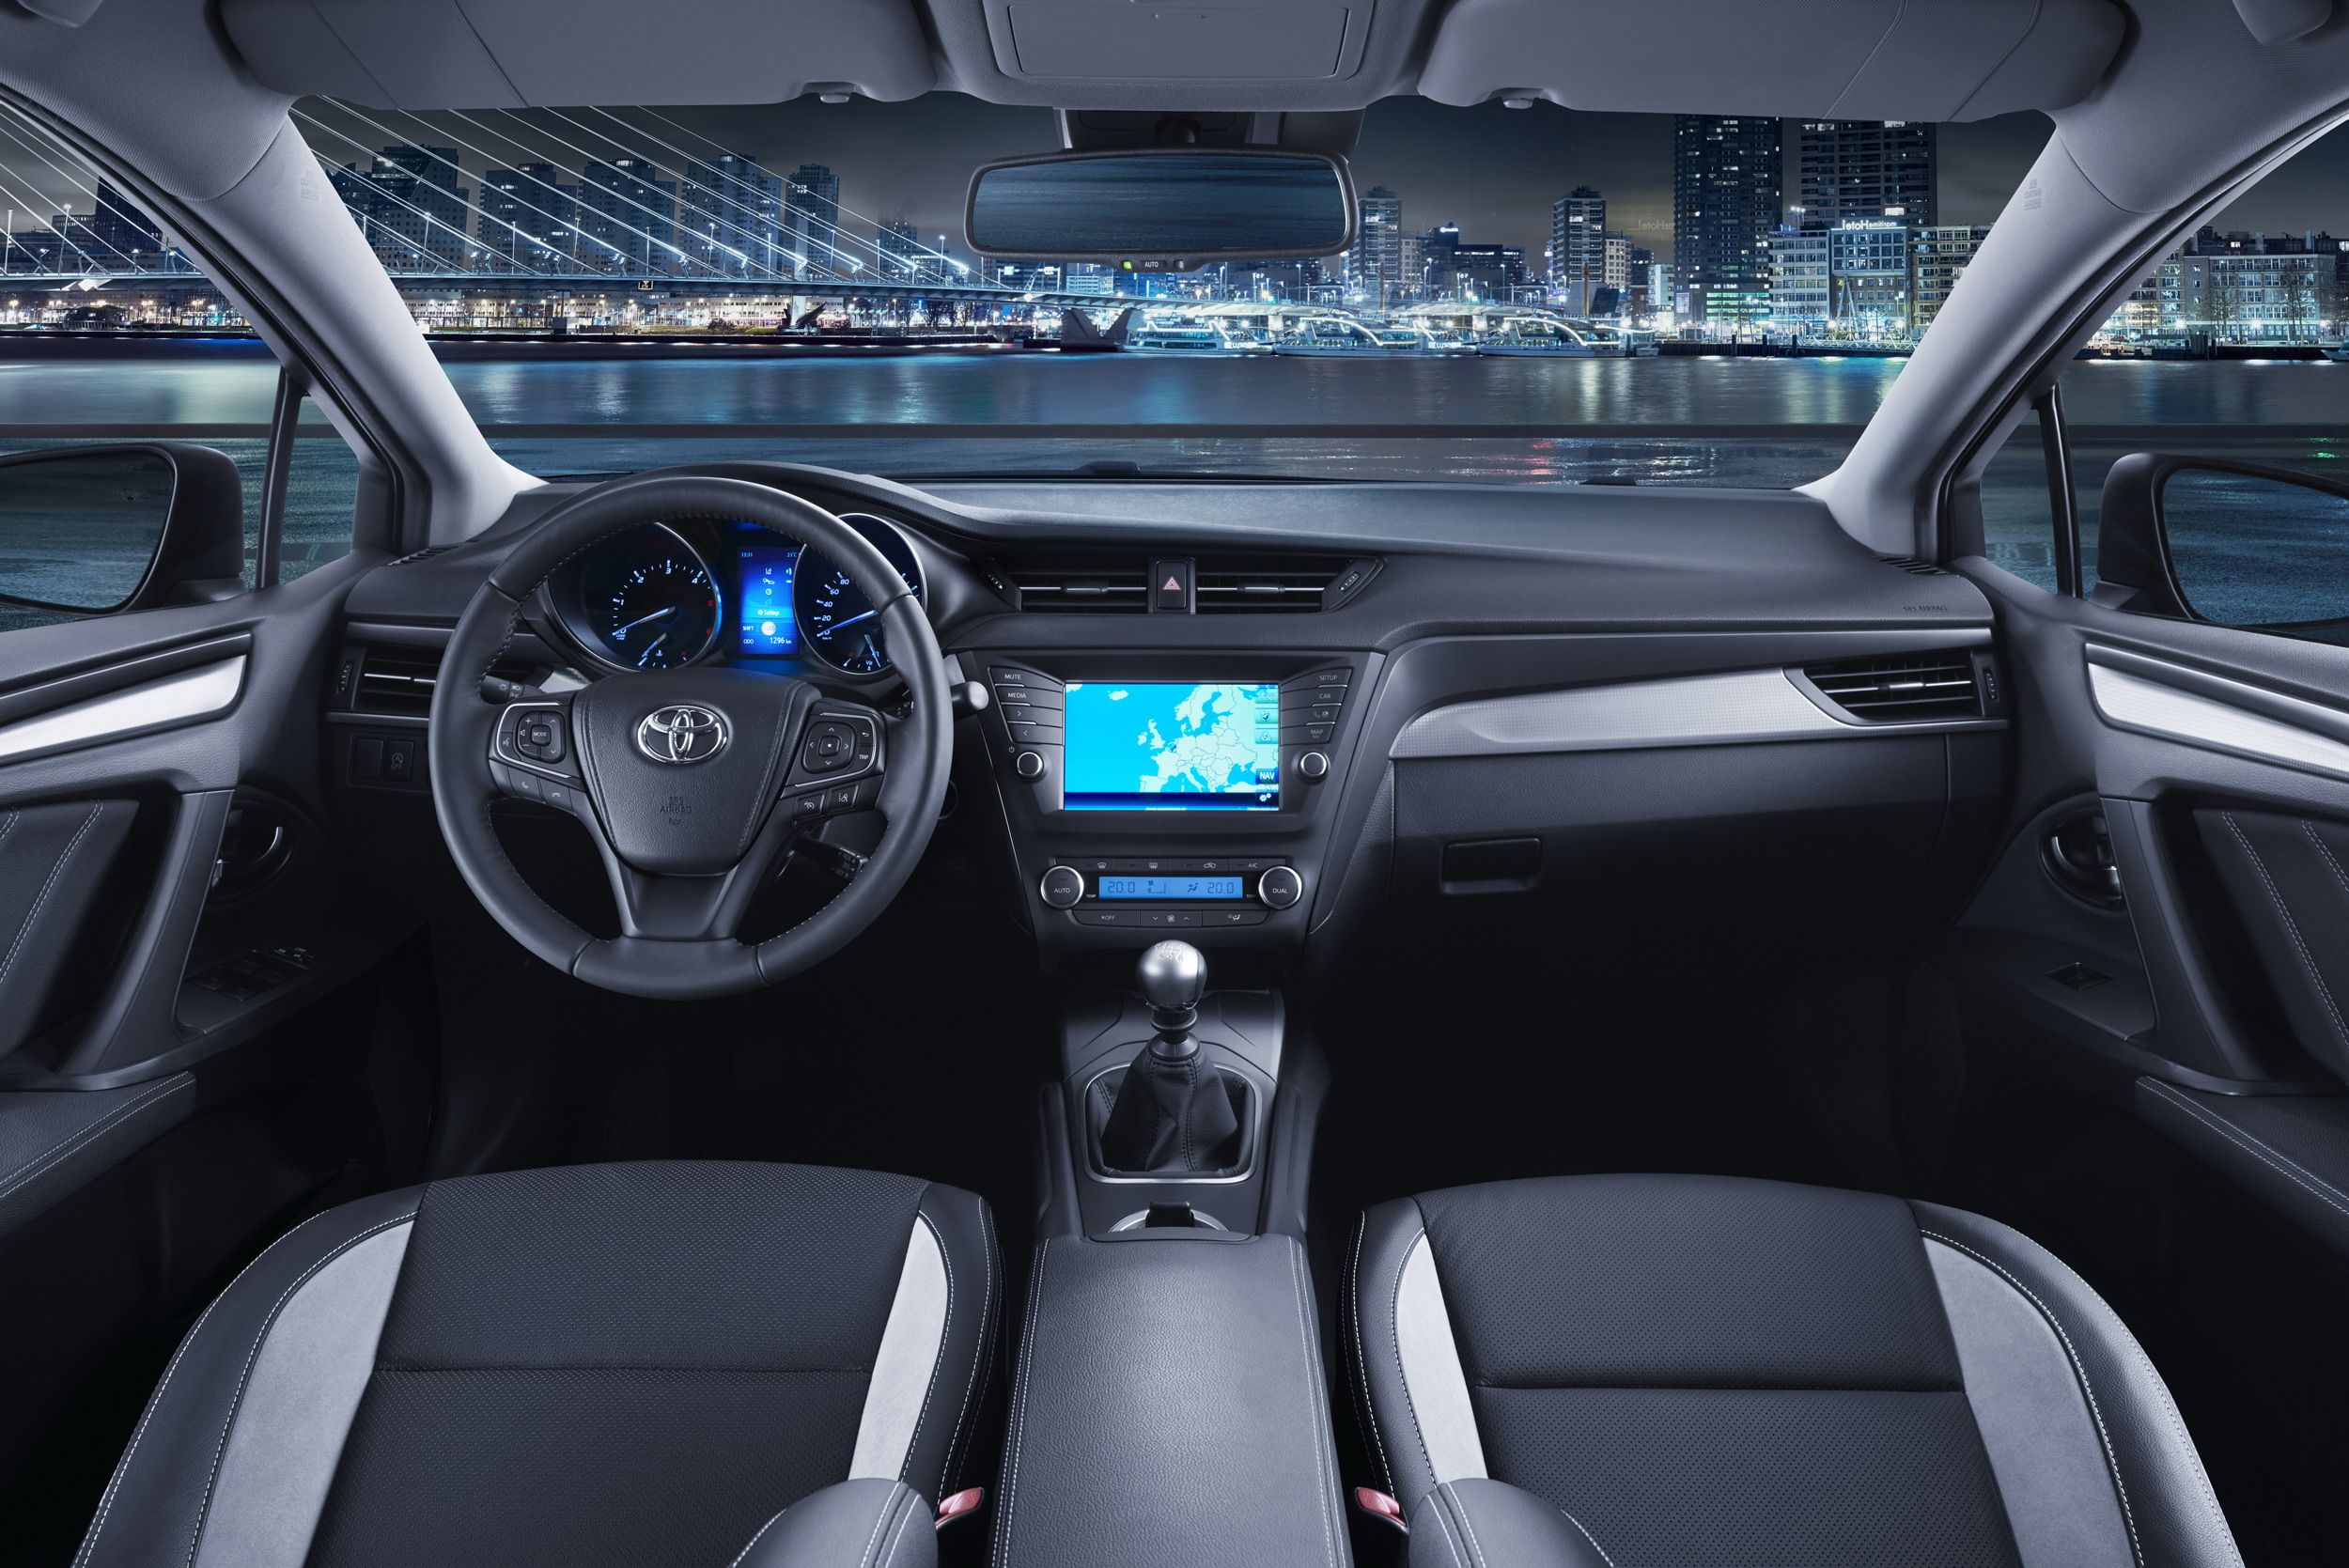 2015 Toyota Avensis